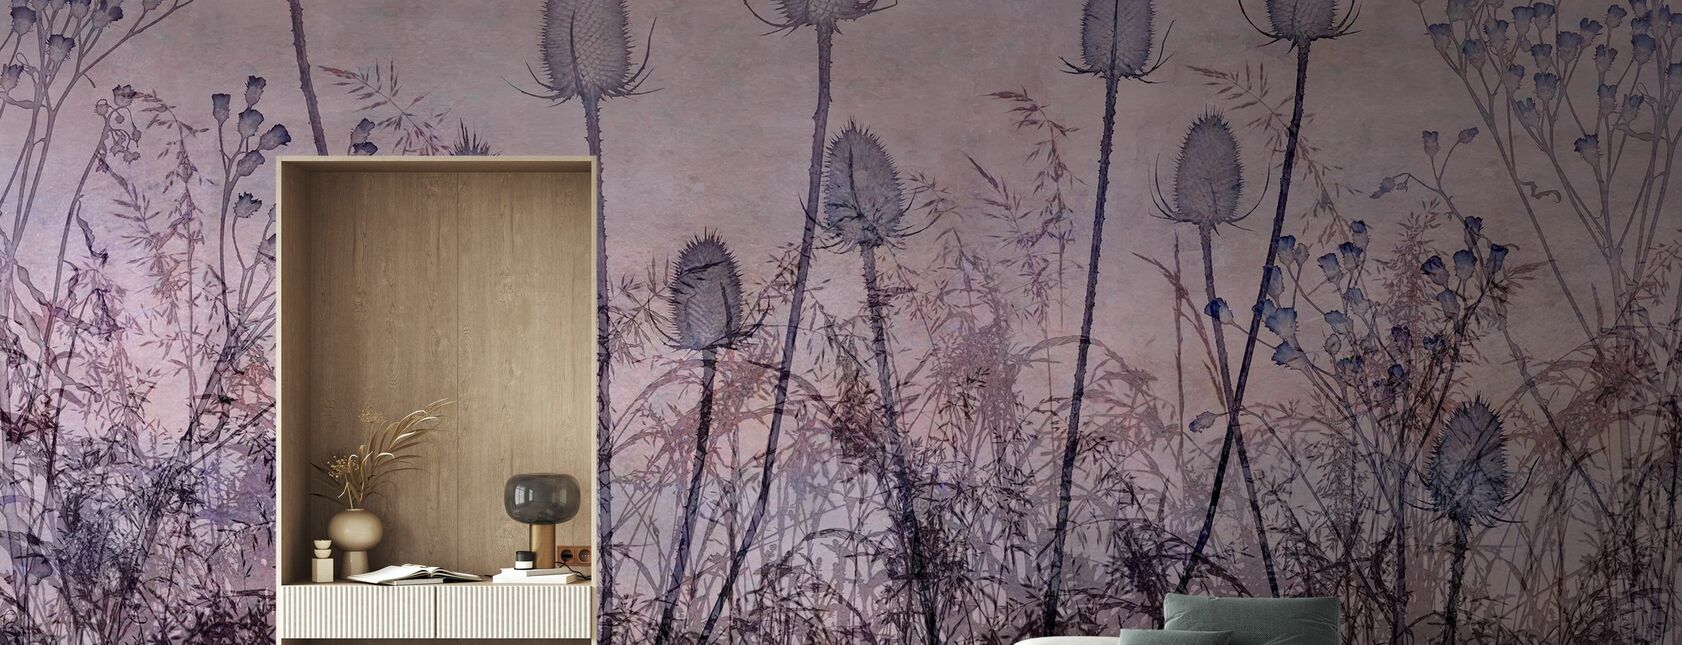 Flores silvestres que revestem o trilho de púrpura - Papel de parede - Sala de estar